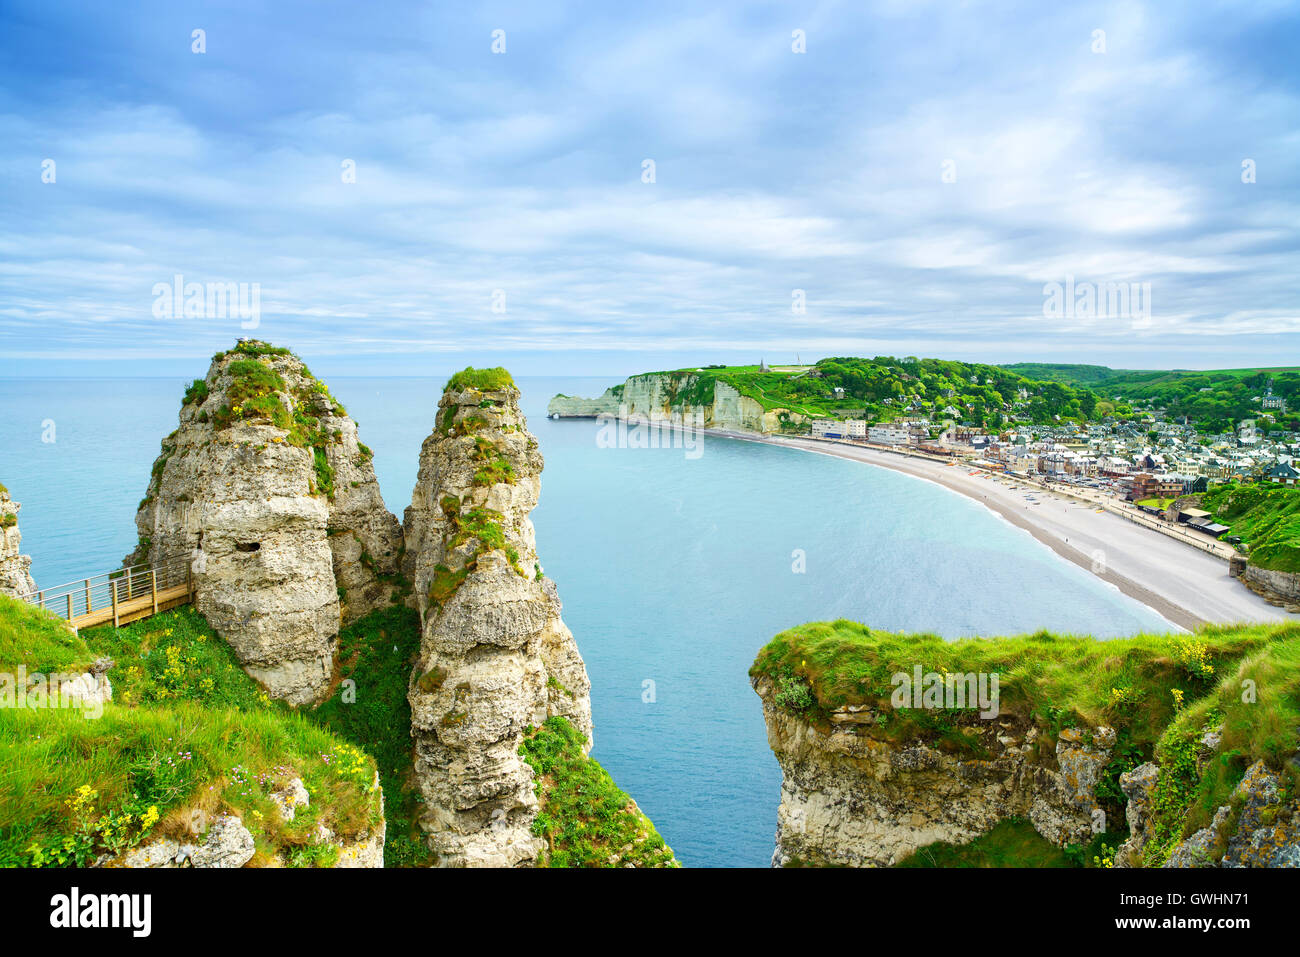 Le village d'Etretat et de sa baie, plage vue aérienne à partir de la falaise. Normandie, France, Europe. Banque D'Images